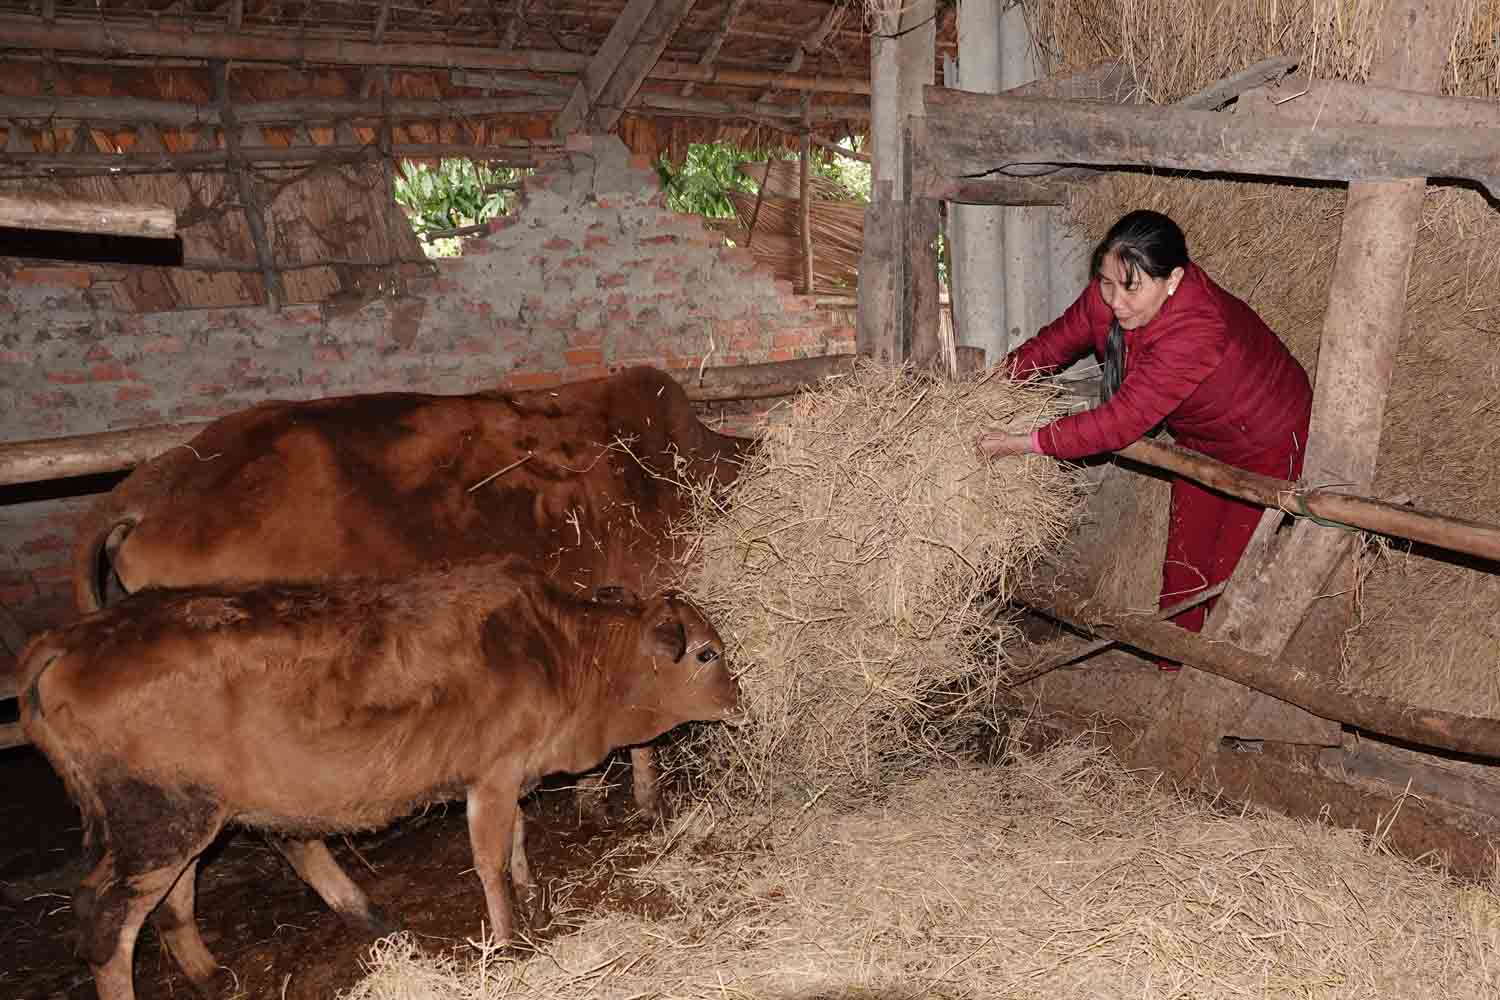 Bà Tuấn dùng rơm trải nền cho bò nằm để giữ ấm. Ảnh: Trần Tuấn.